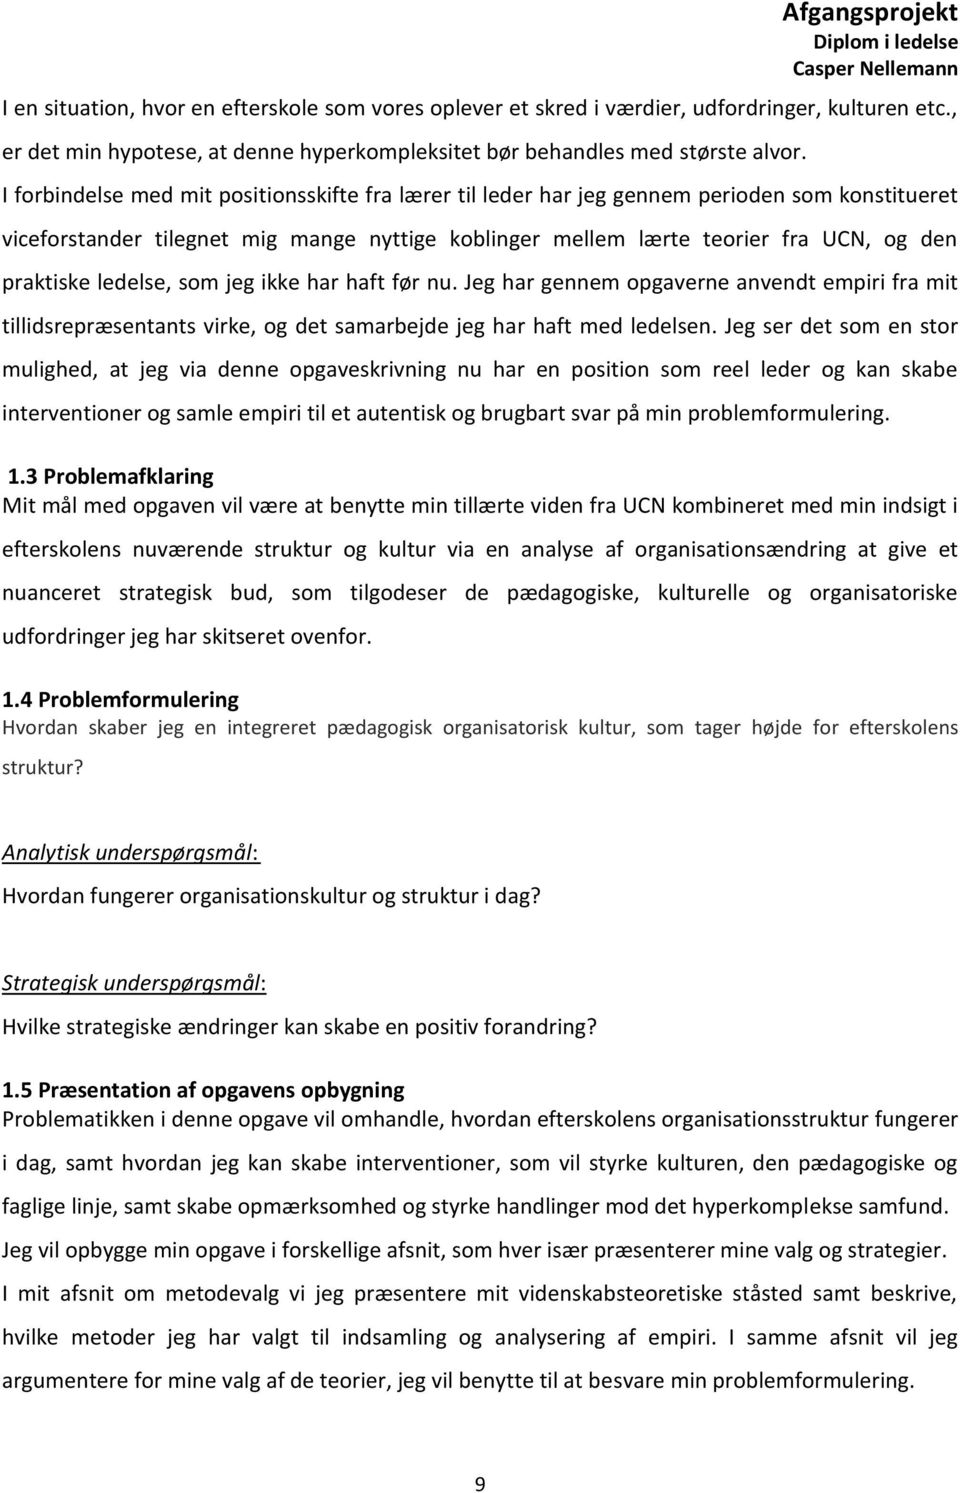 Efterskole. En fri organisation. Afgangsprojekt Diplom i ledelse Casper  Nellemann - PDF Free Download